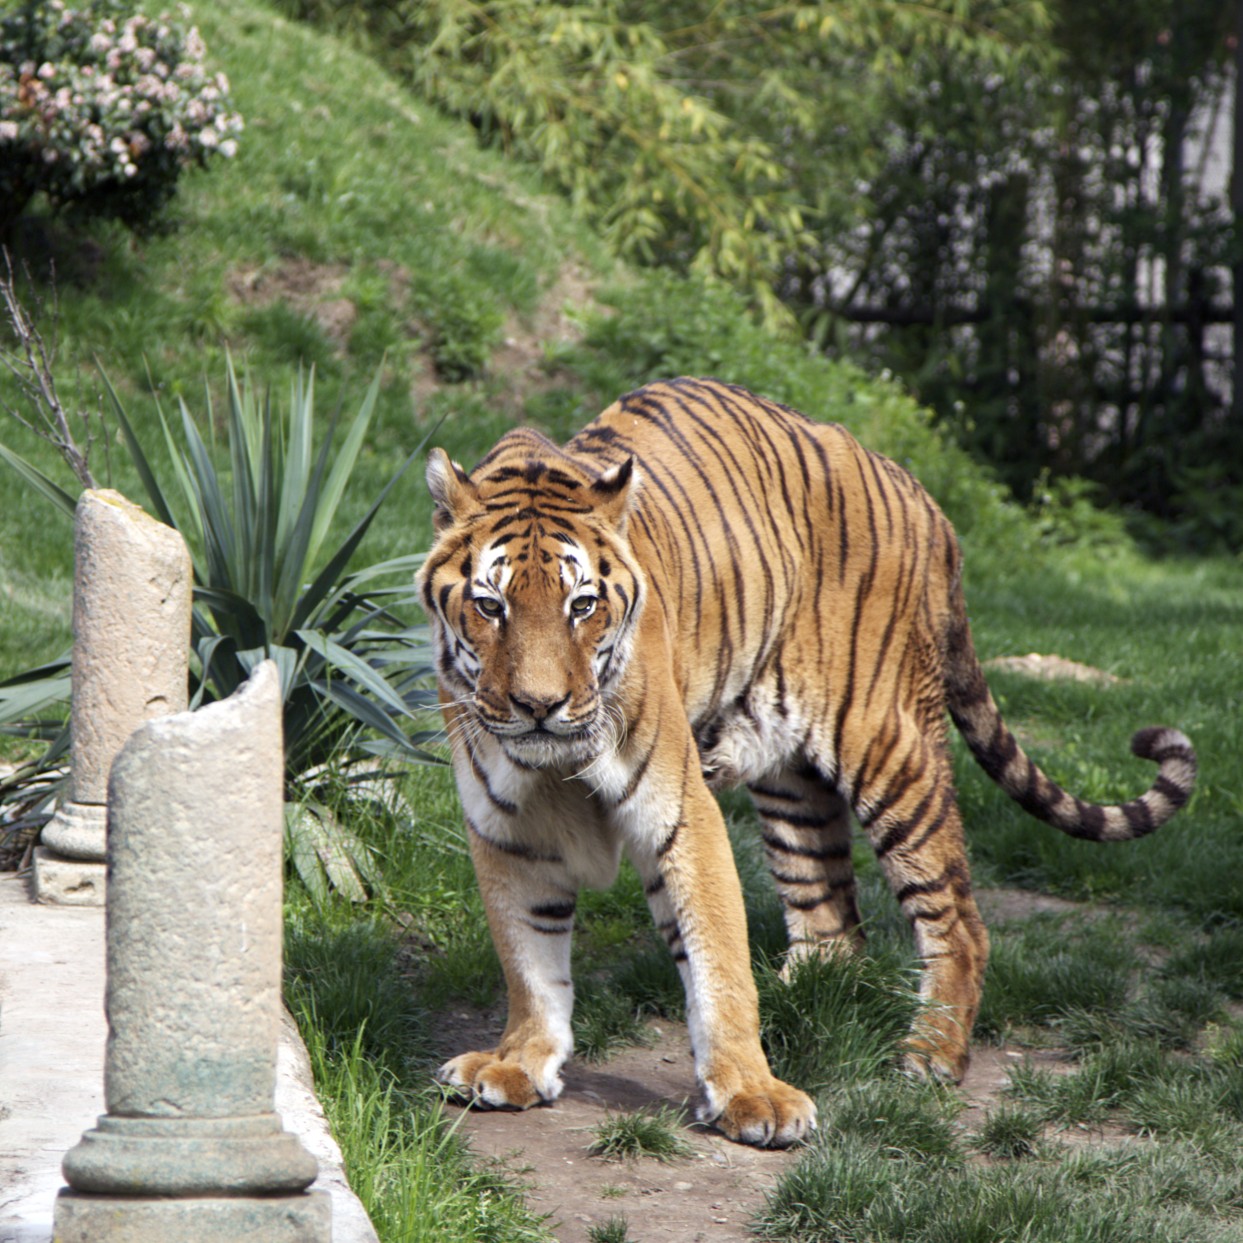 Tiger posing...